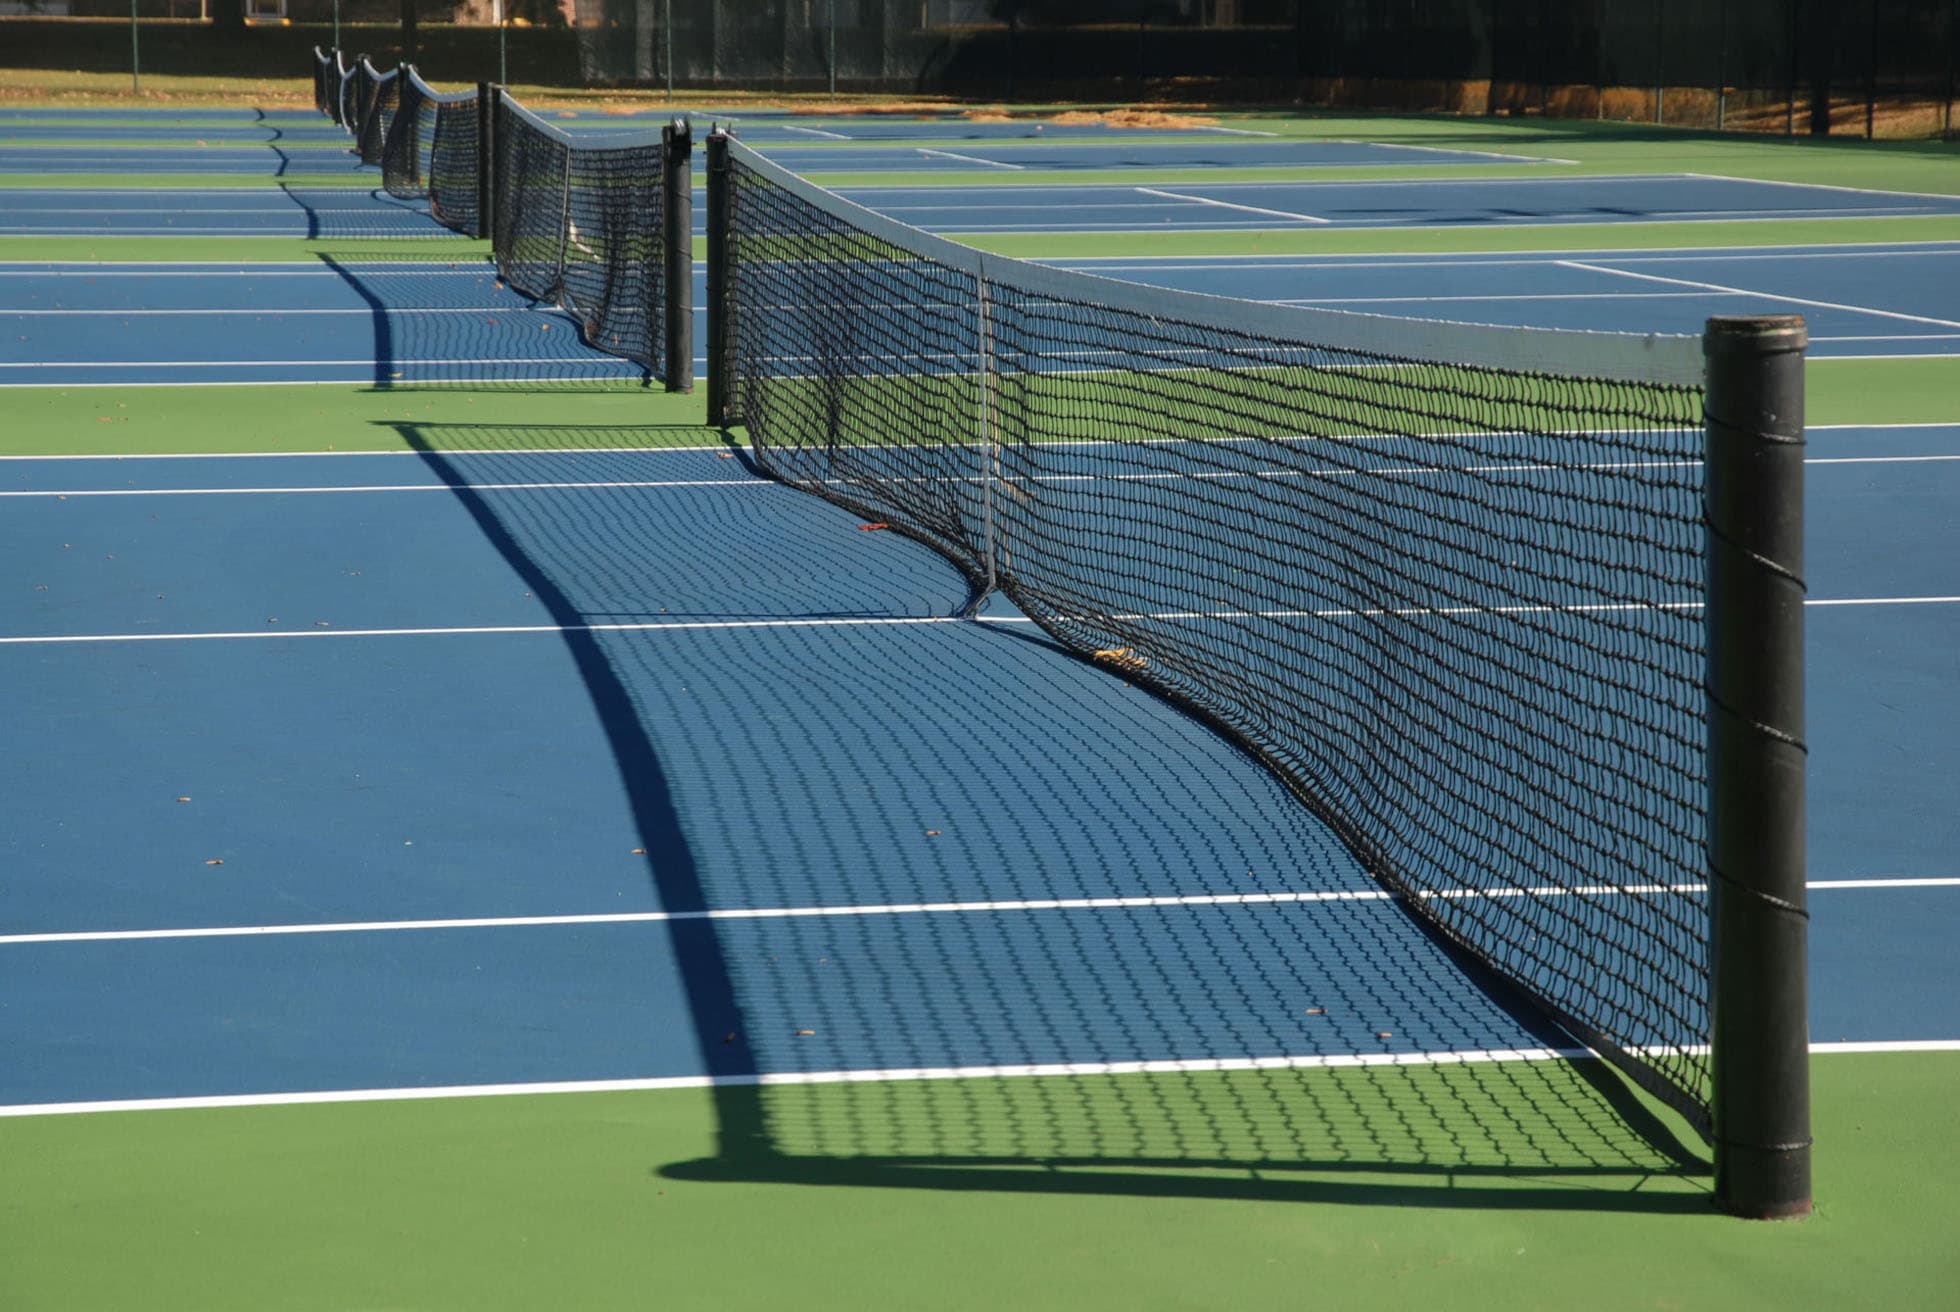 outdoor tennis court lighting